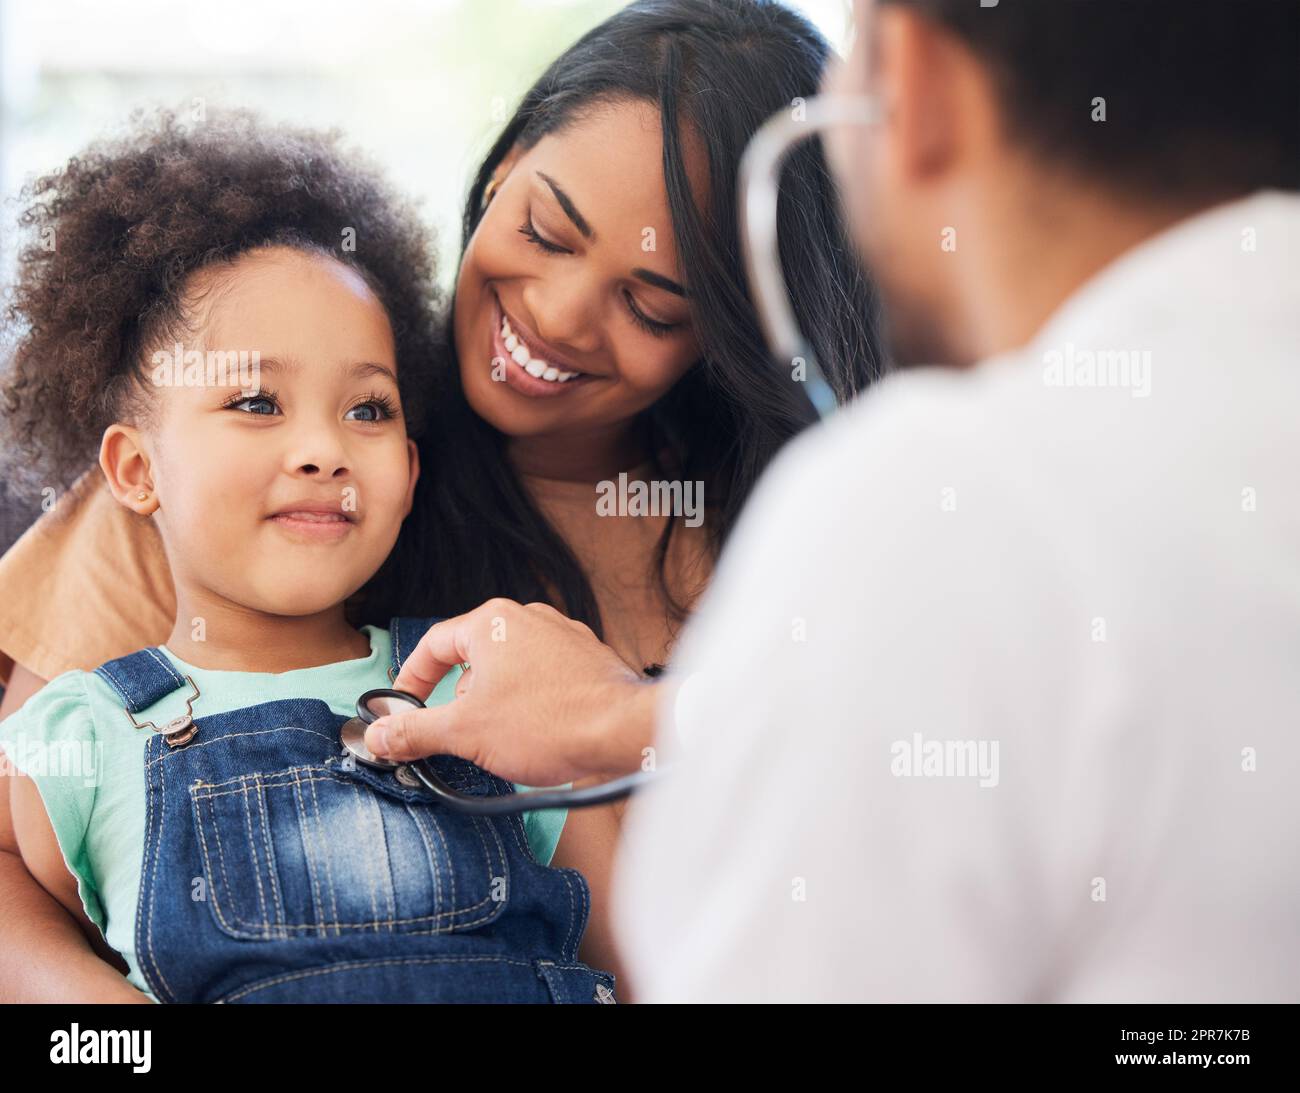 Im una ragazza grande ora. Una ragazza piccola seduta sul suo grembo delle madri mentre è esaminata dal suo medico. Foto Stock